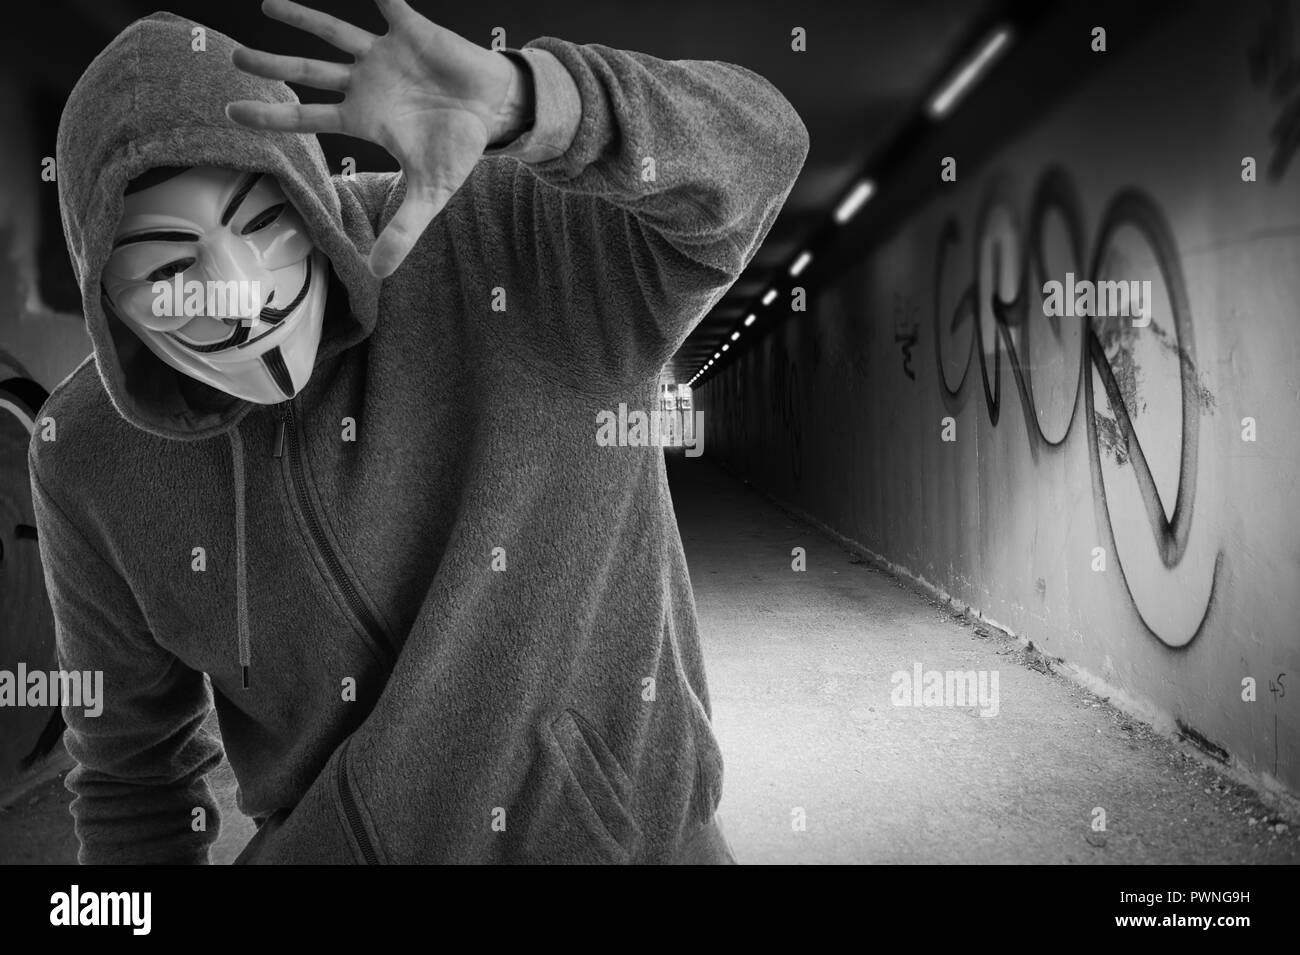 Hombre que llevaba una máscara de Guy Fawkes en la entrada de una tummel, Anónimo. Foto de stock